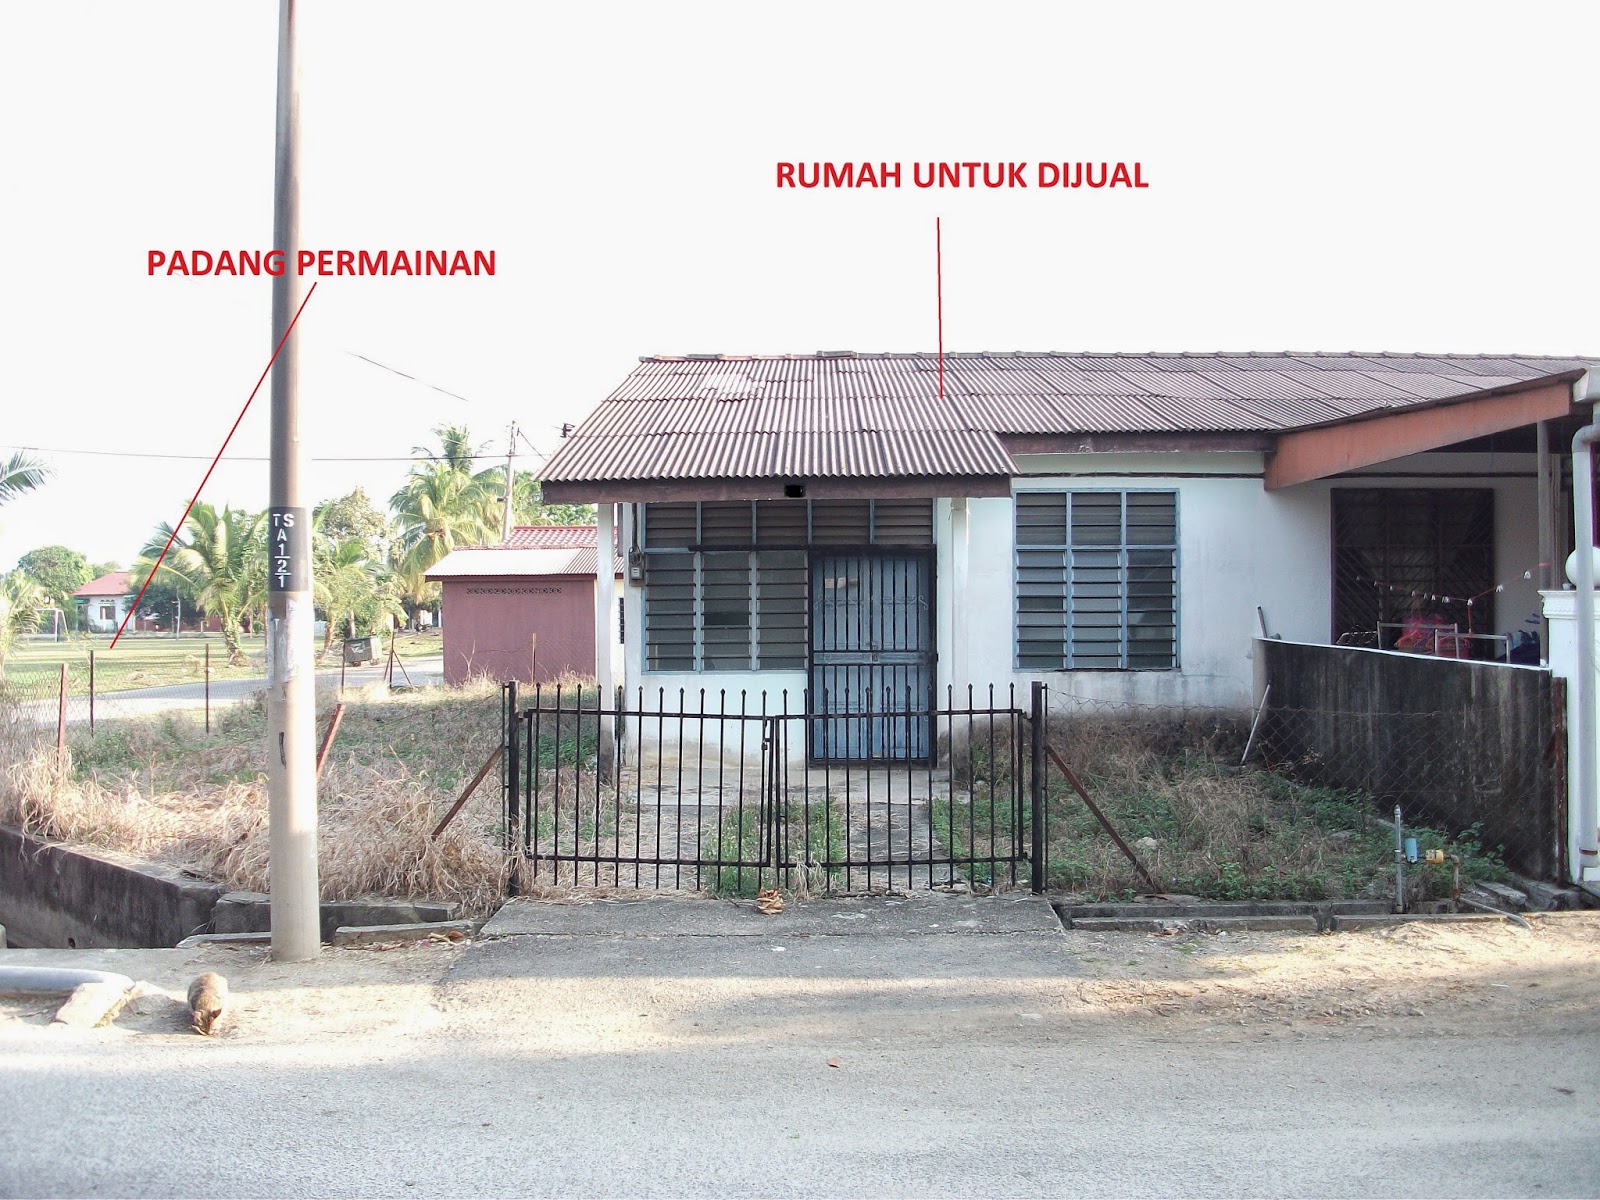 Estate Agent Ejen Hartanah Sungai Petani Kedah rumah  